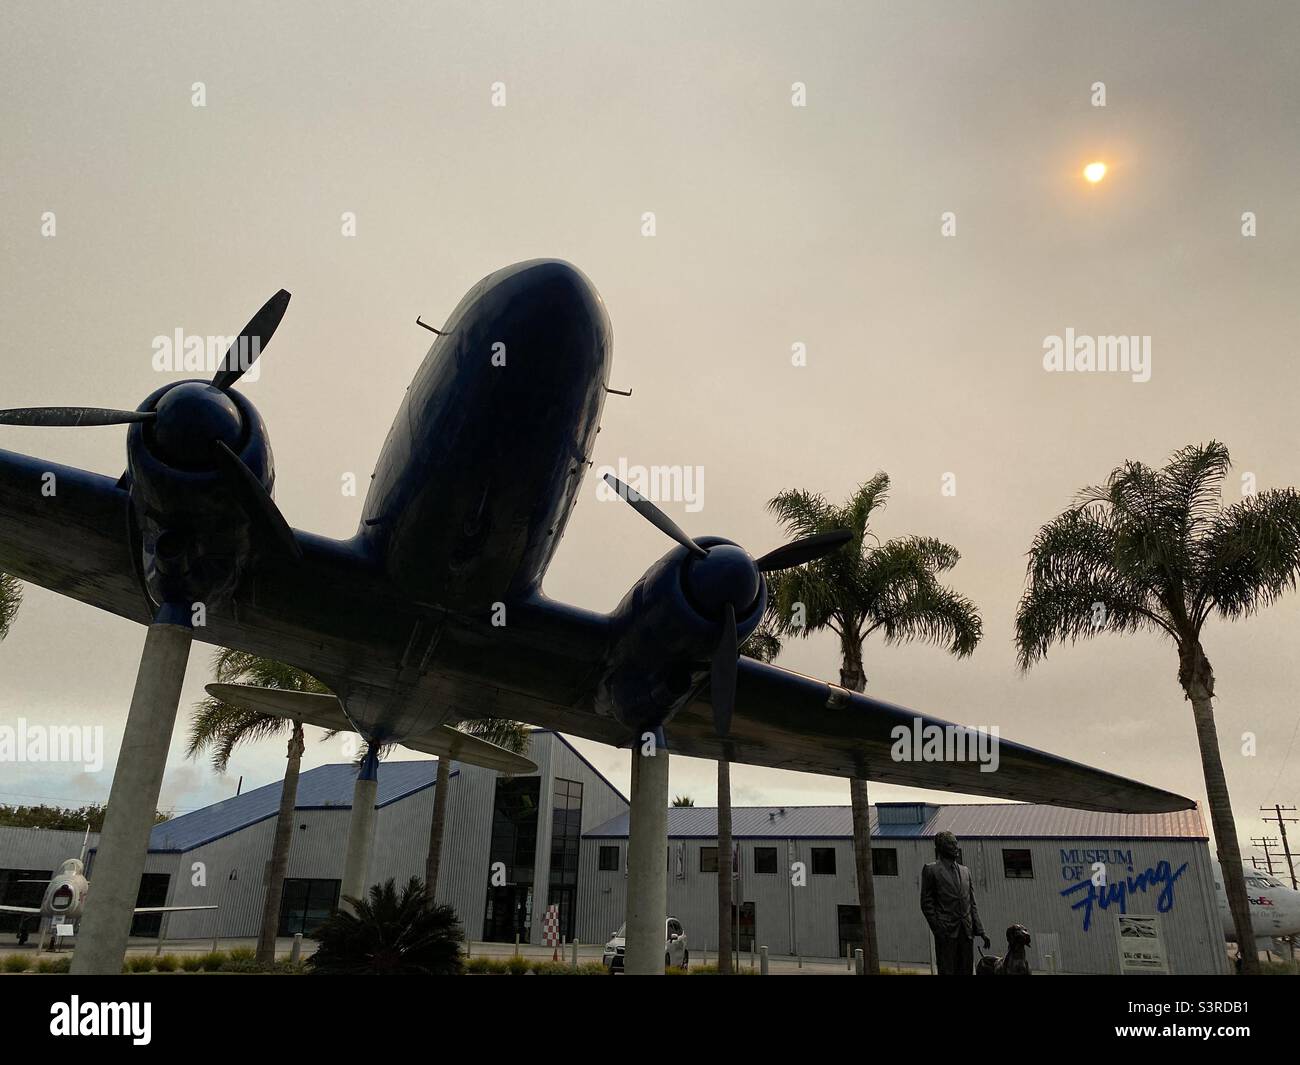 LOS ANGELES, CA, SETTEMBRE 2021: Douglas DC3 Monument, con palme fuori dal Museum of Flying all'aeroporto municipale di Santa Monica, pomeriggio di nebbia con sole basso e debole Foto Stock